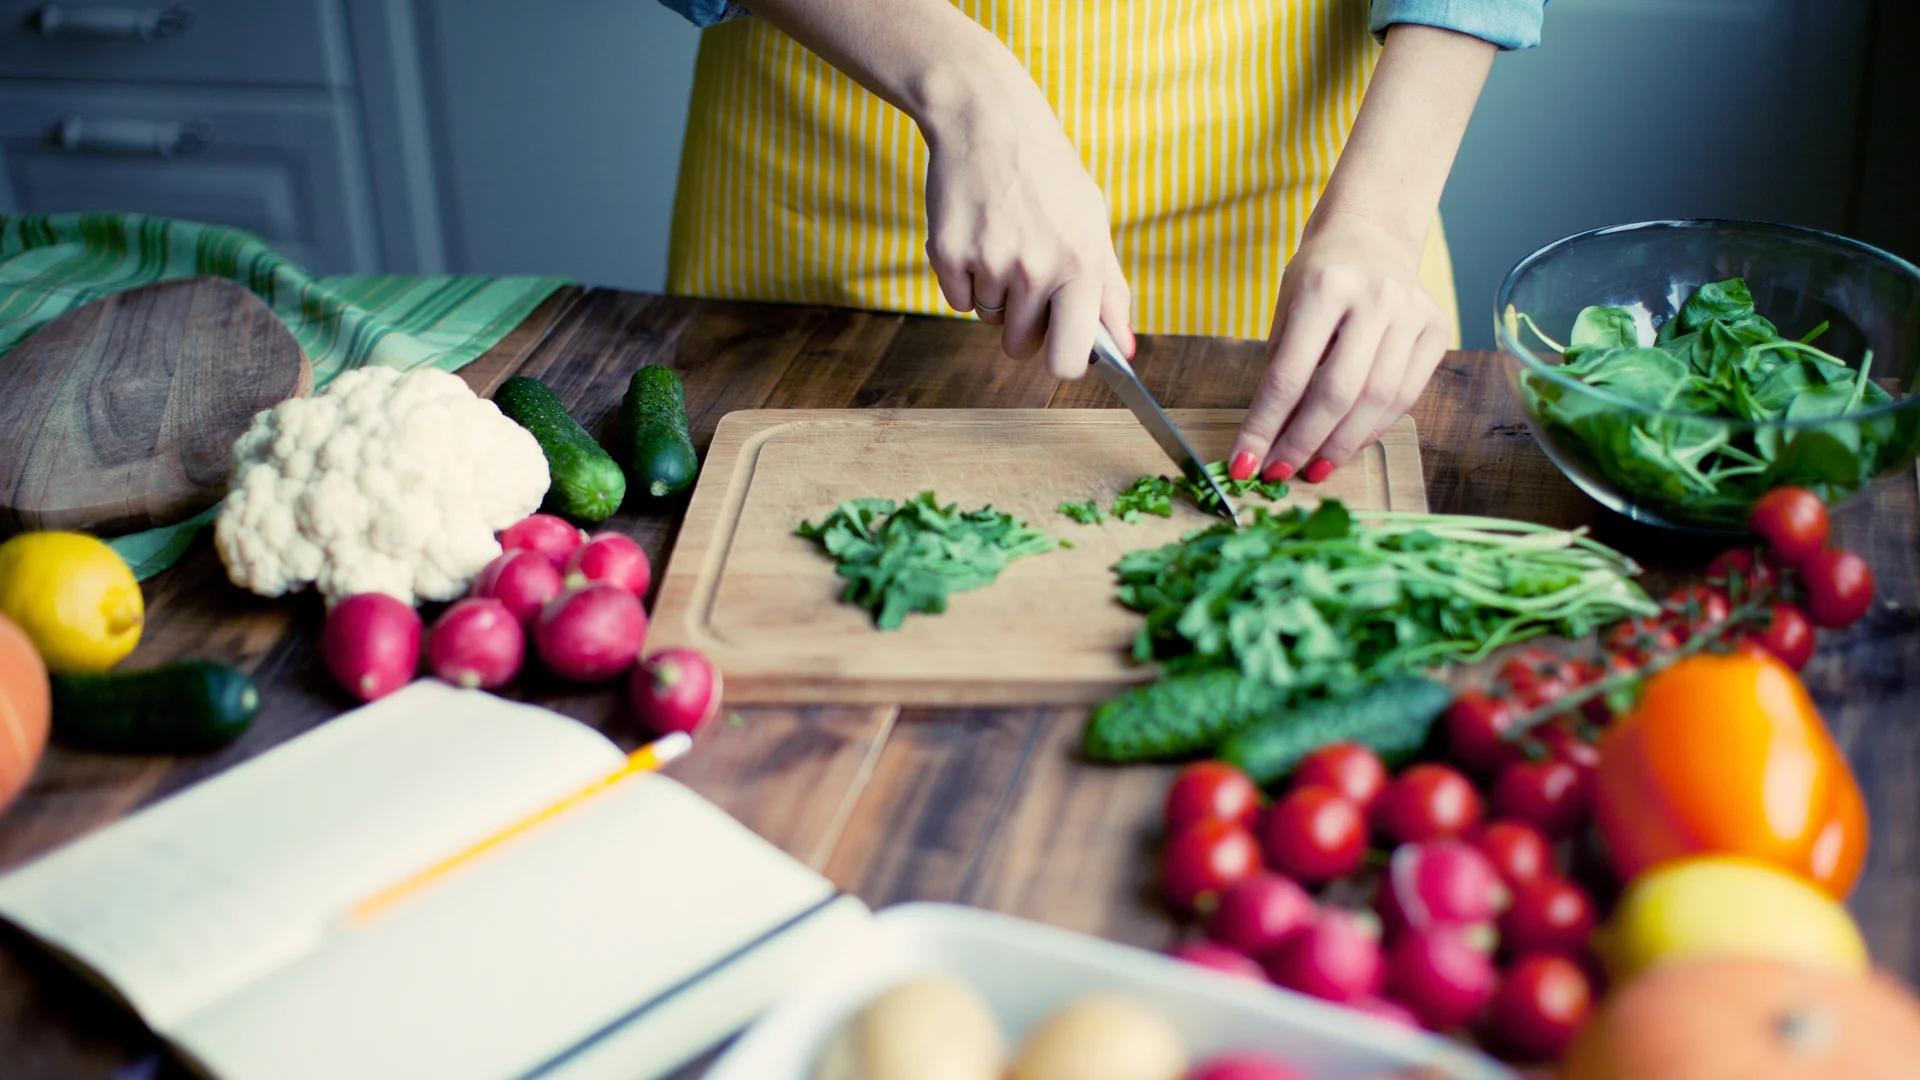 Une personne coupe des légumes sur une planche à découper, avec une grande variété de légumes frais et un livre de recettes ouvert sur la table.